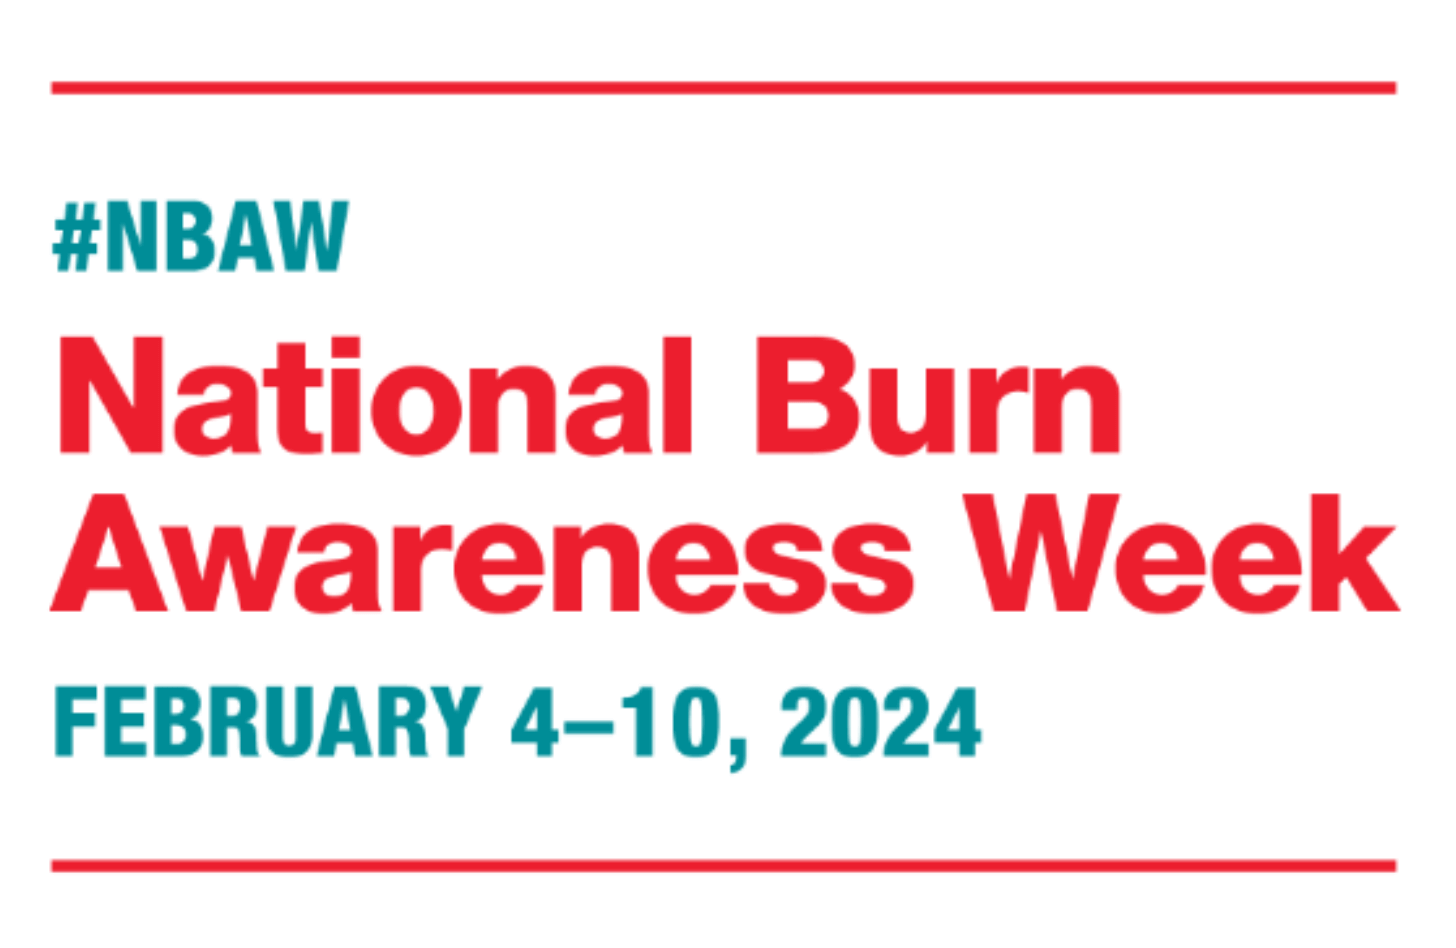 Text: #NBAW National Burn Awareness Week